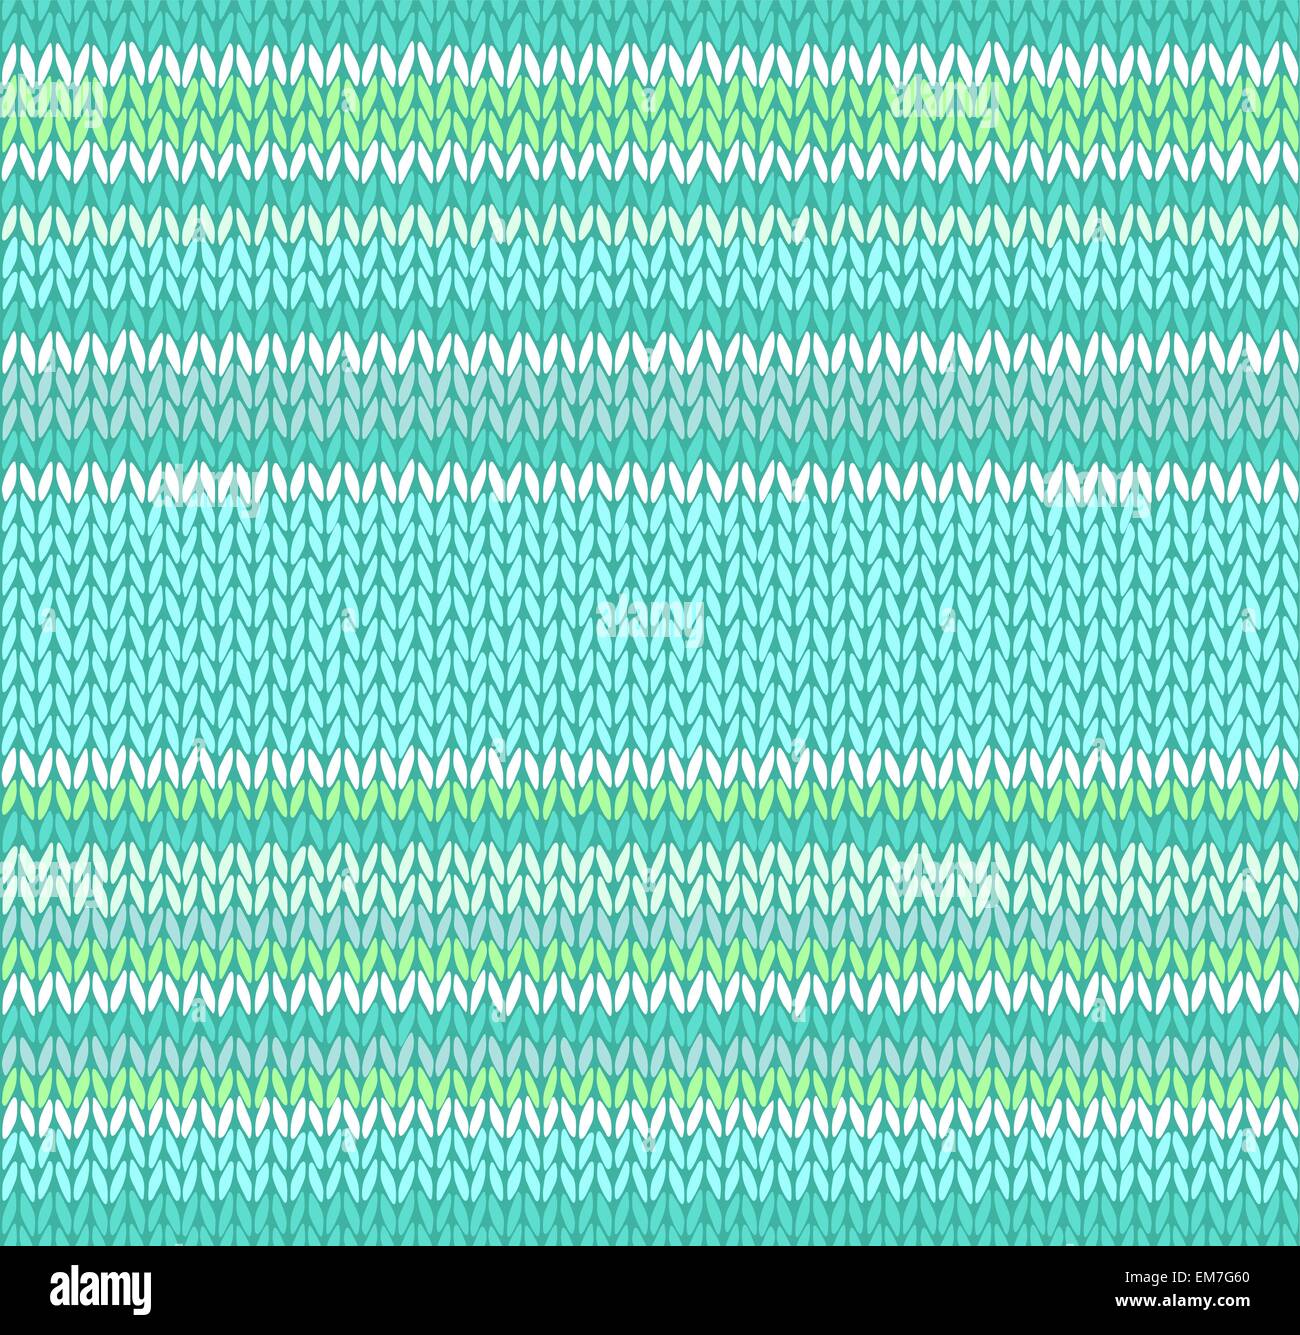 Transparente Style Vert Bleu Blanc Couleur Light Vector Patte tricoté Illustration de Vecteur